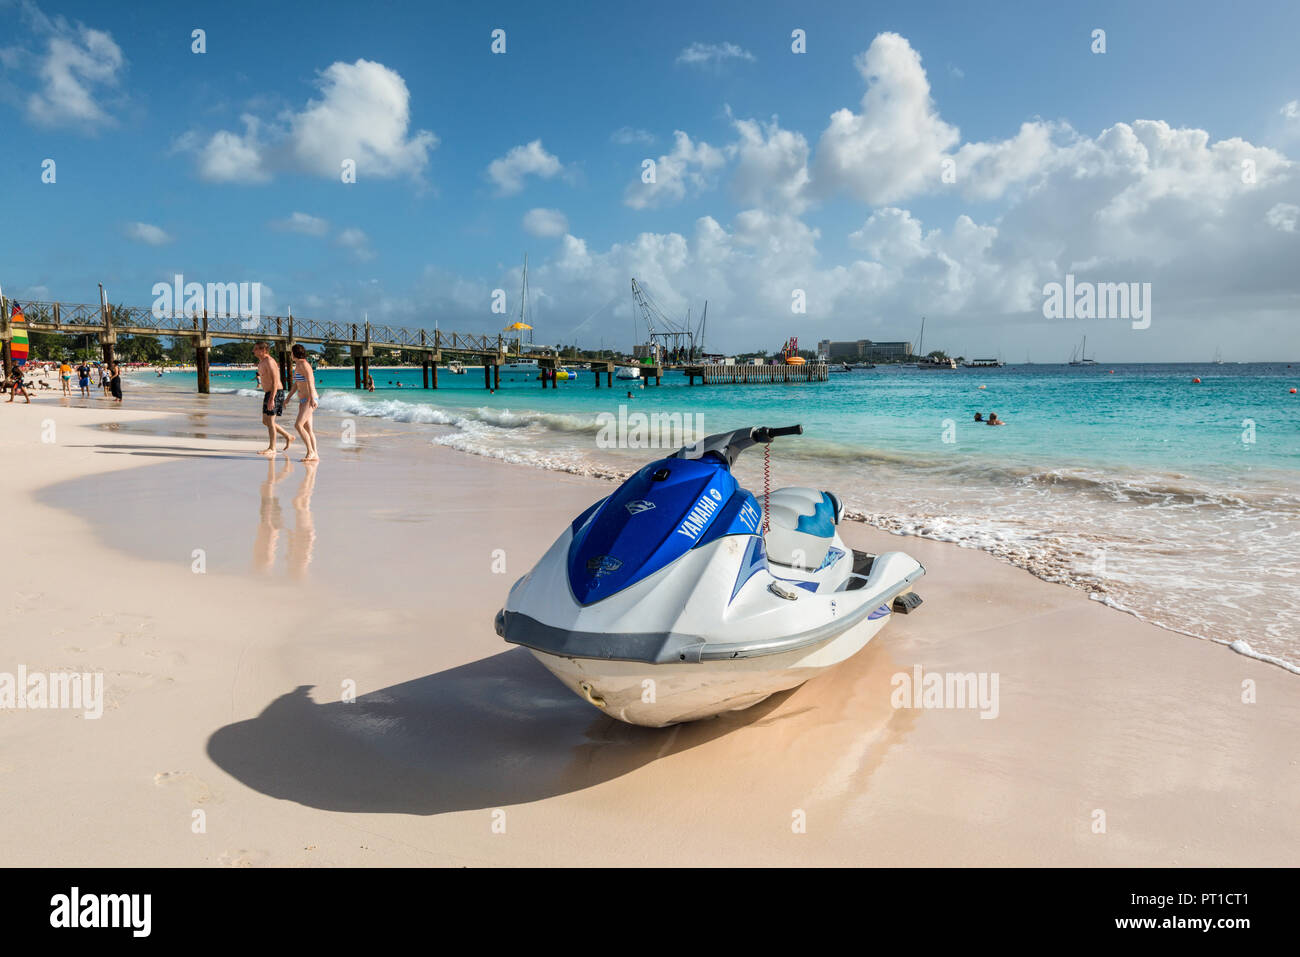 Bridgetown, Barbados - Dezember 18, 2016: Jet Ski auf dem Brownes Strand am sonnigen Tag in Bridgetown, Barbados, West Indies, Karibik, Zentral- und Südamerika. Stockfoto